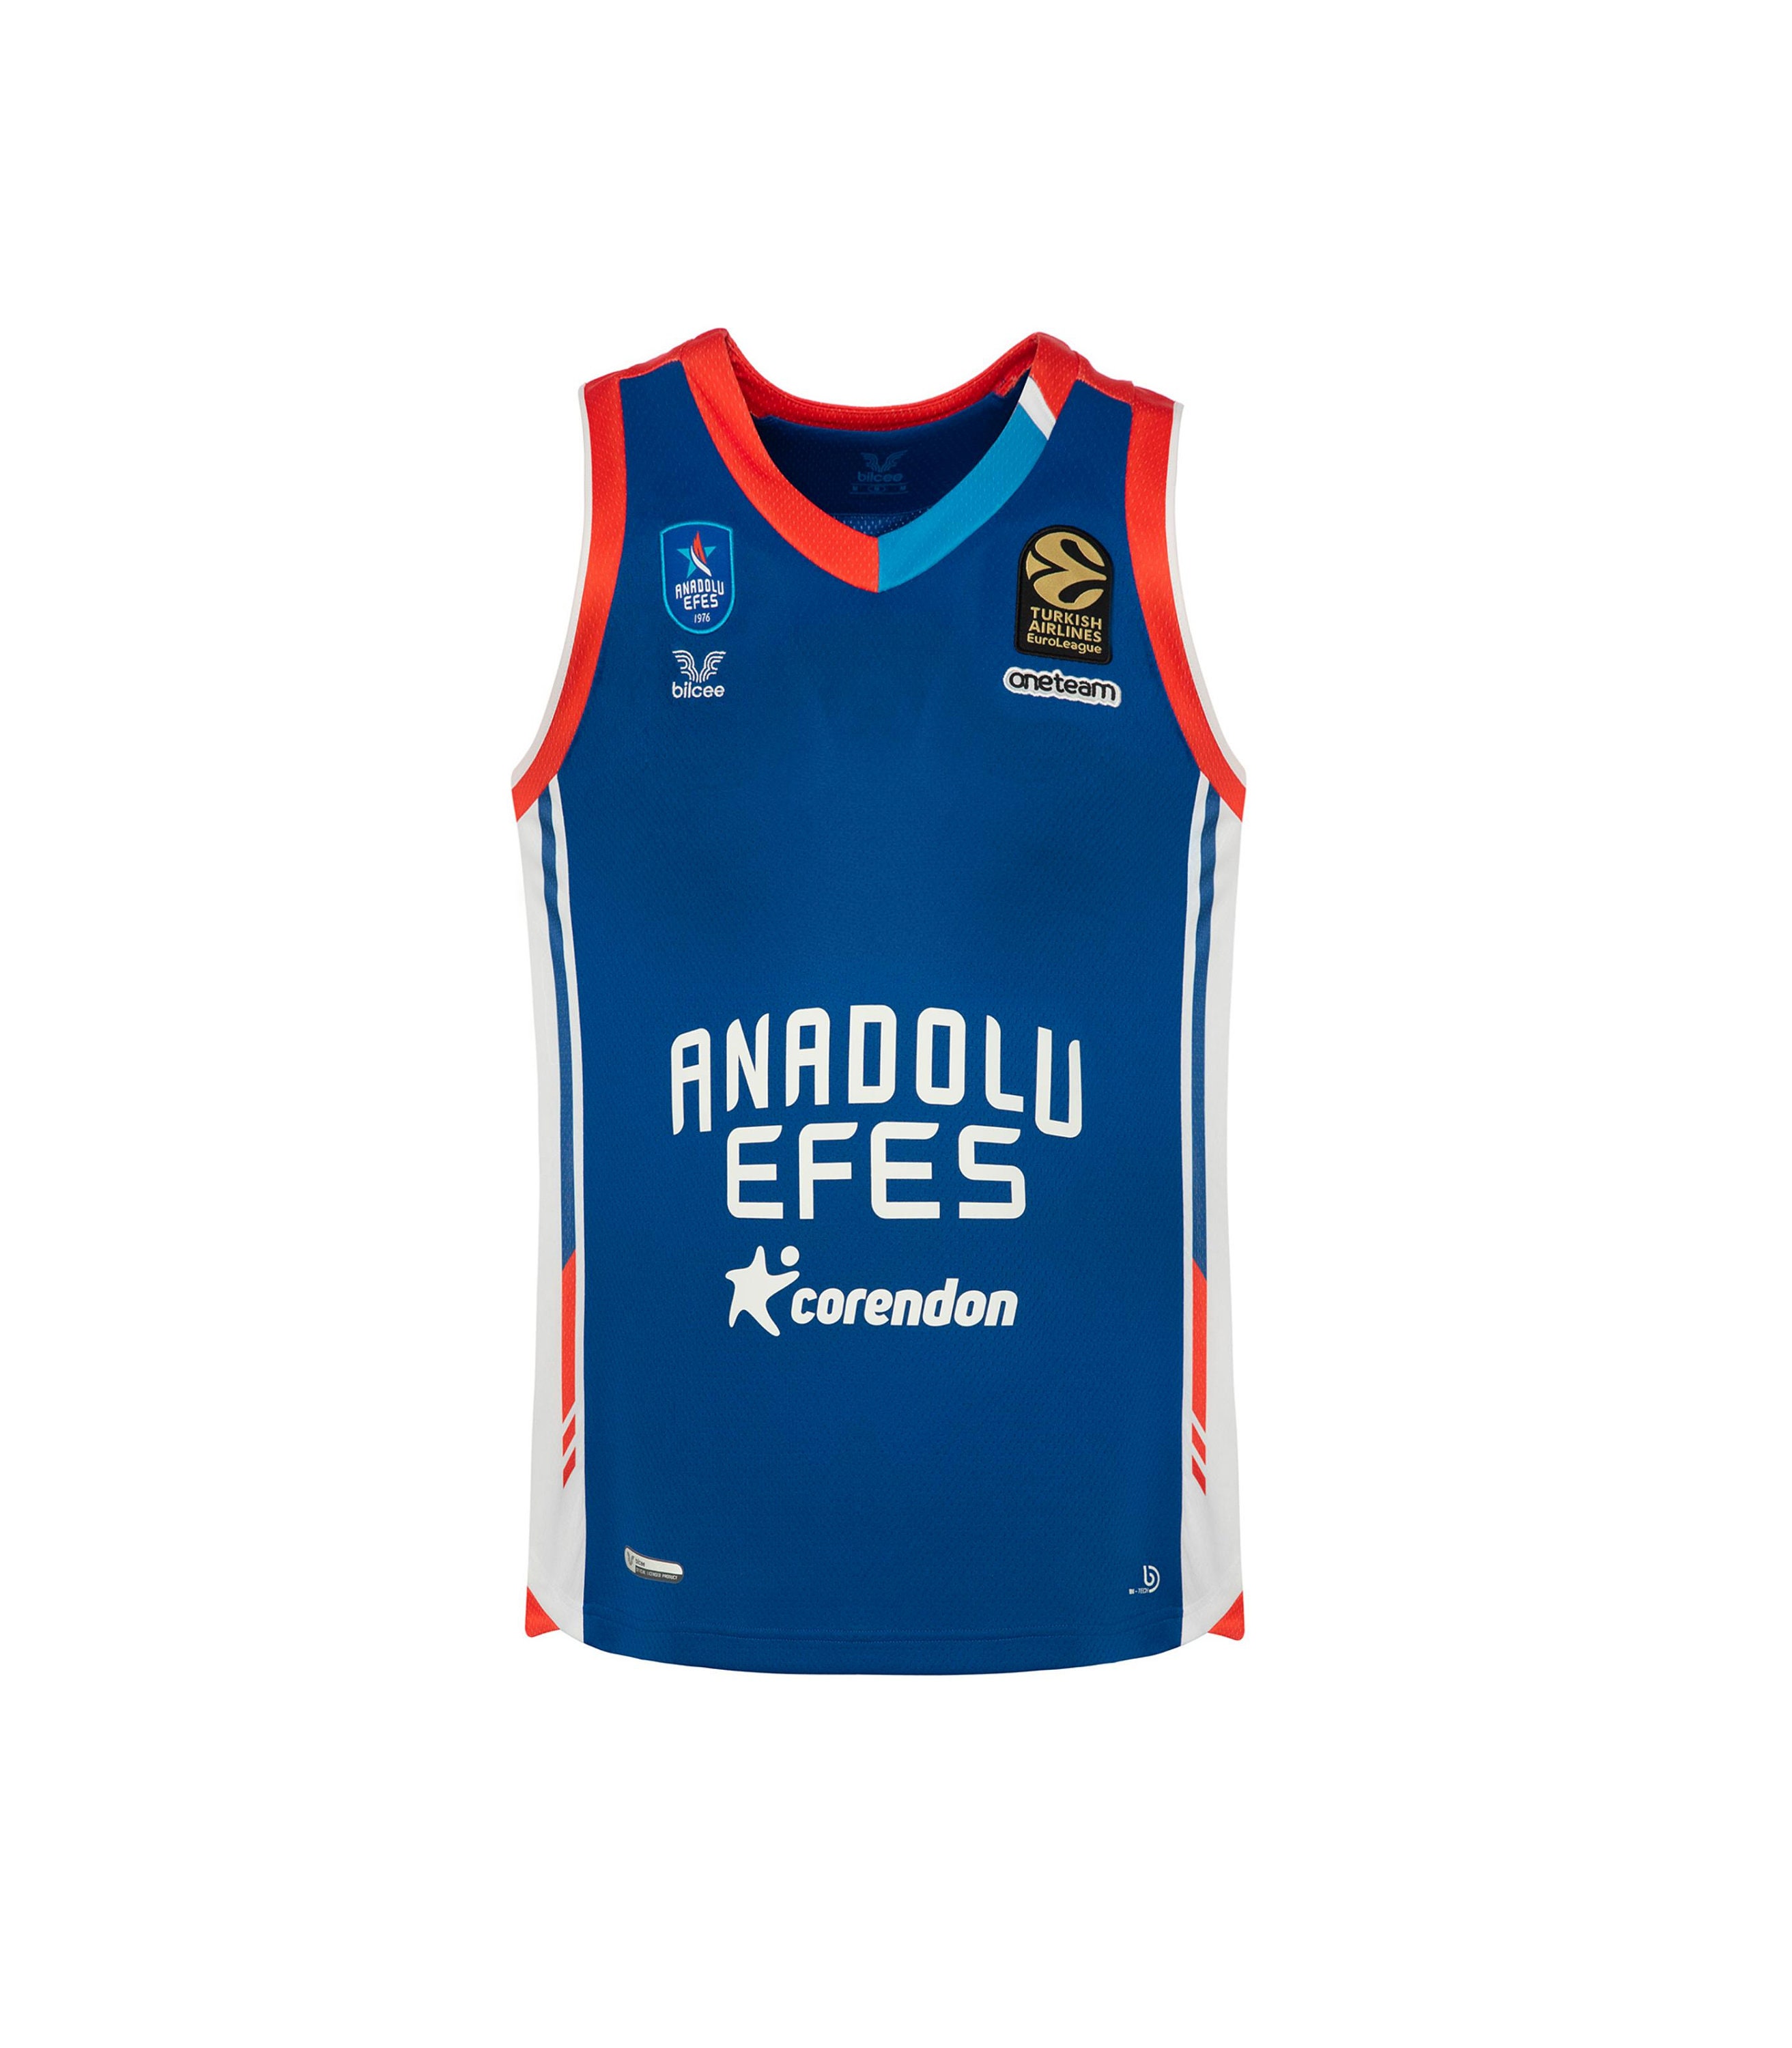 uniform euroleague basketball jersey